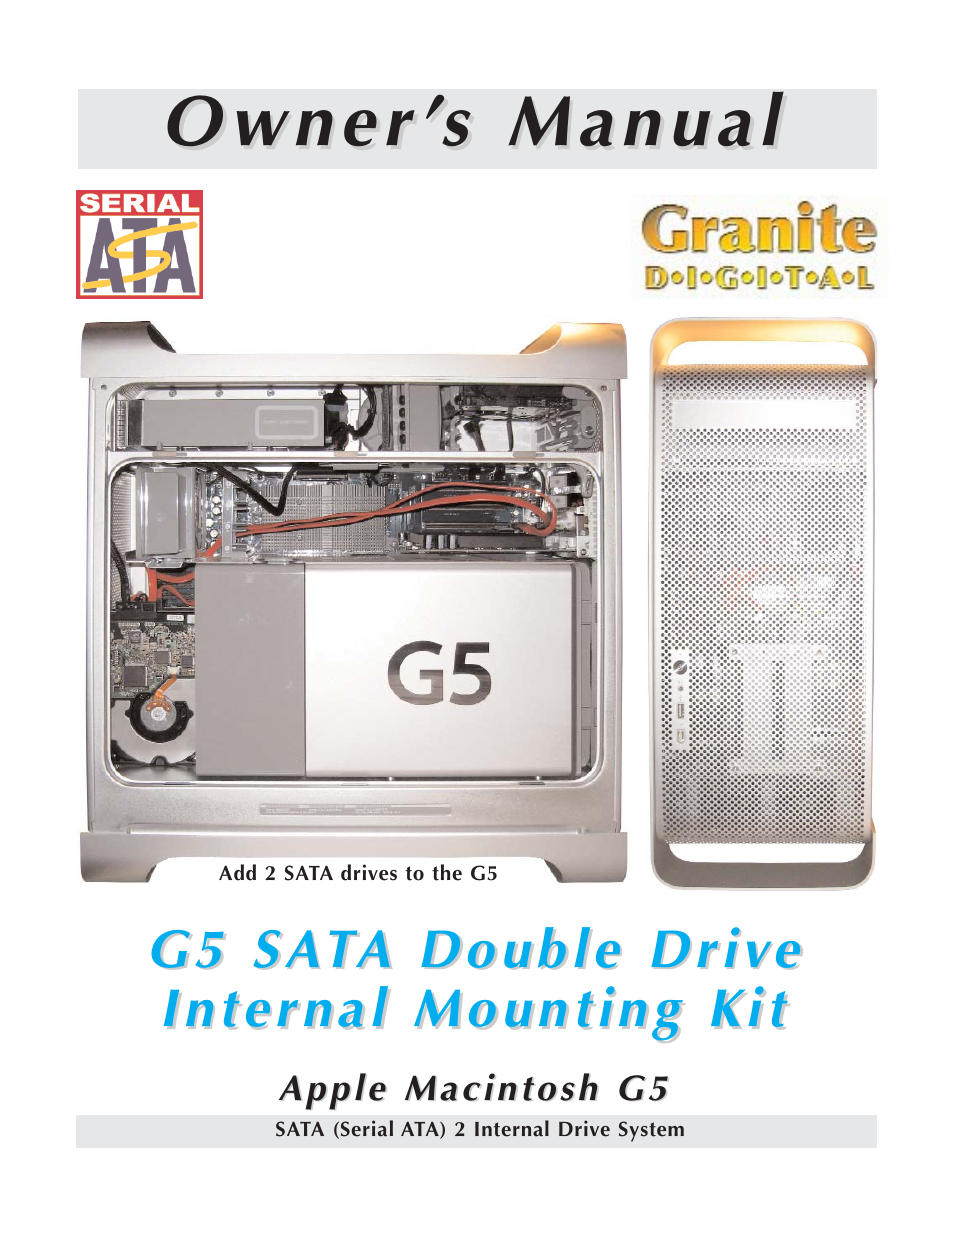 Granite Digital SATA G5 Mounting Bracket Kit User Manual | 18 pages